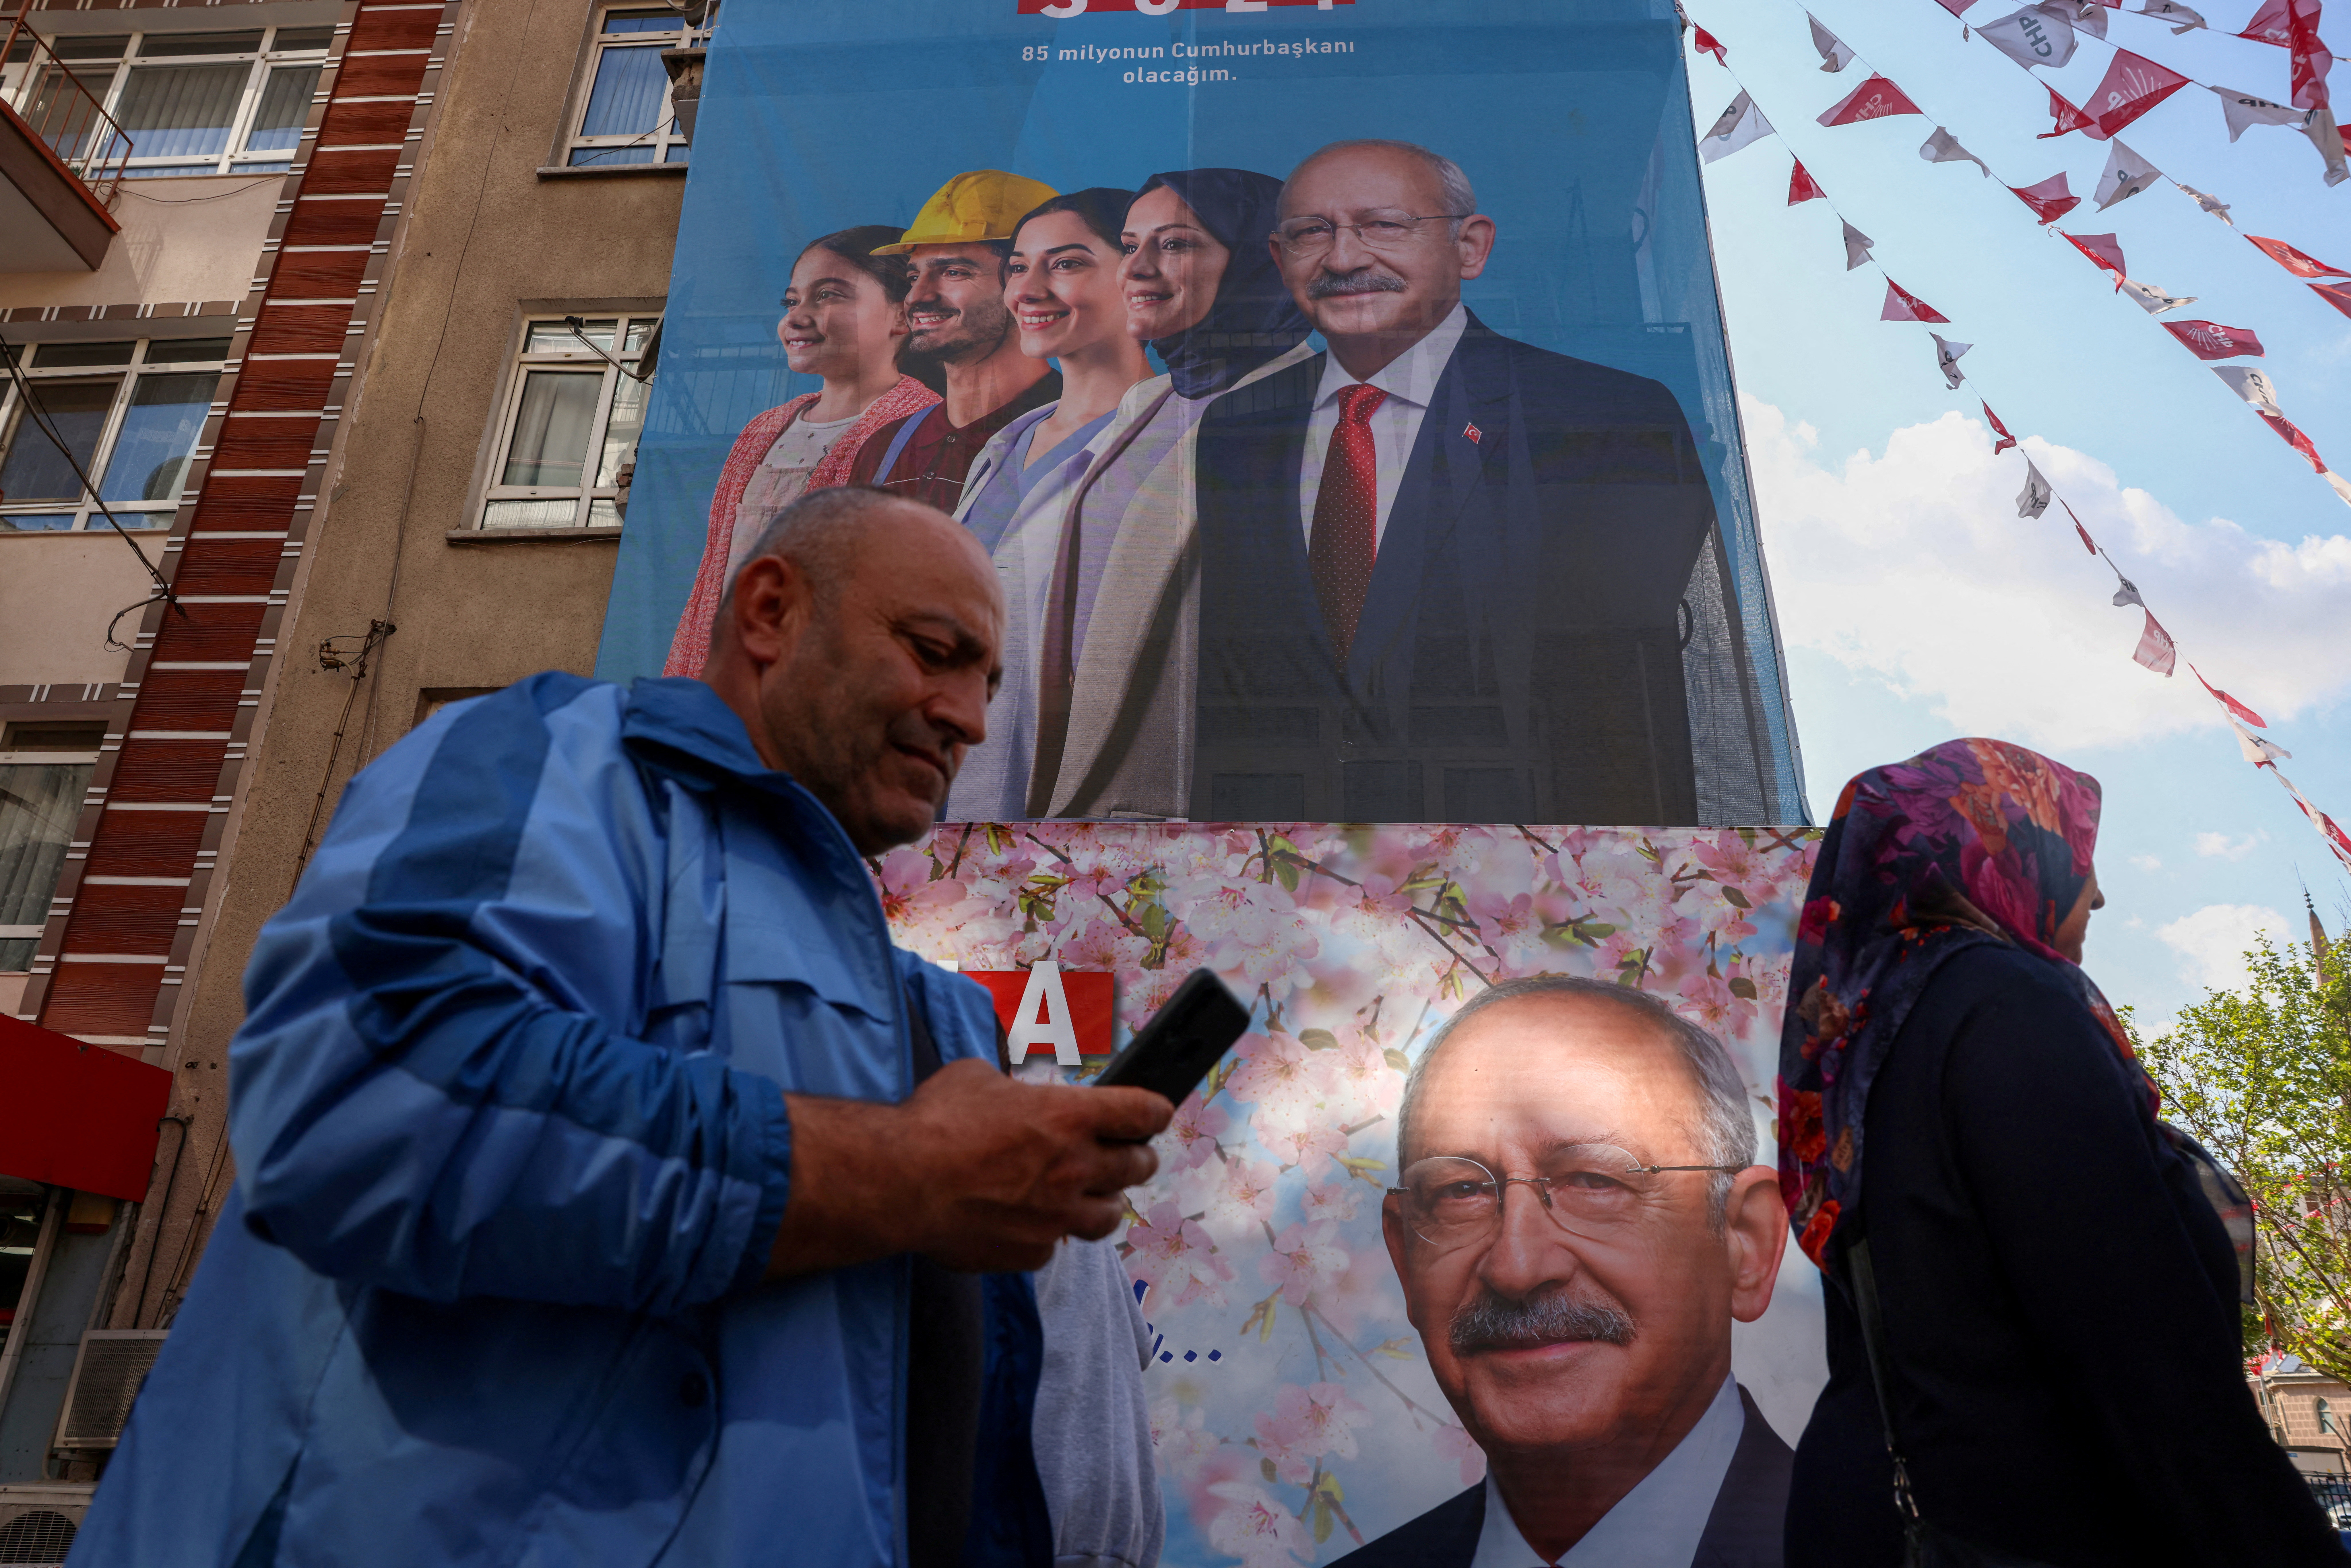 Las encuestas prevén que Recep Tayyip Erdogan perderá en esta primera vuelta frente a Kemal Kiliçdaroglu, el líder opositor respaldado por socialdemócratas, islamistas y nacionalistas. (REUTERS)